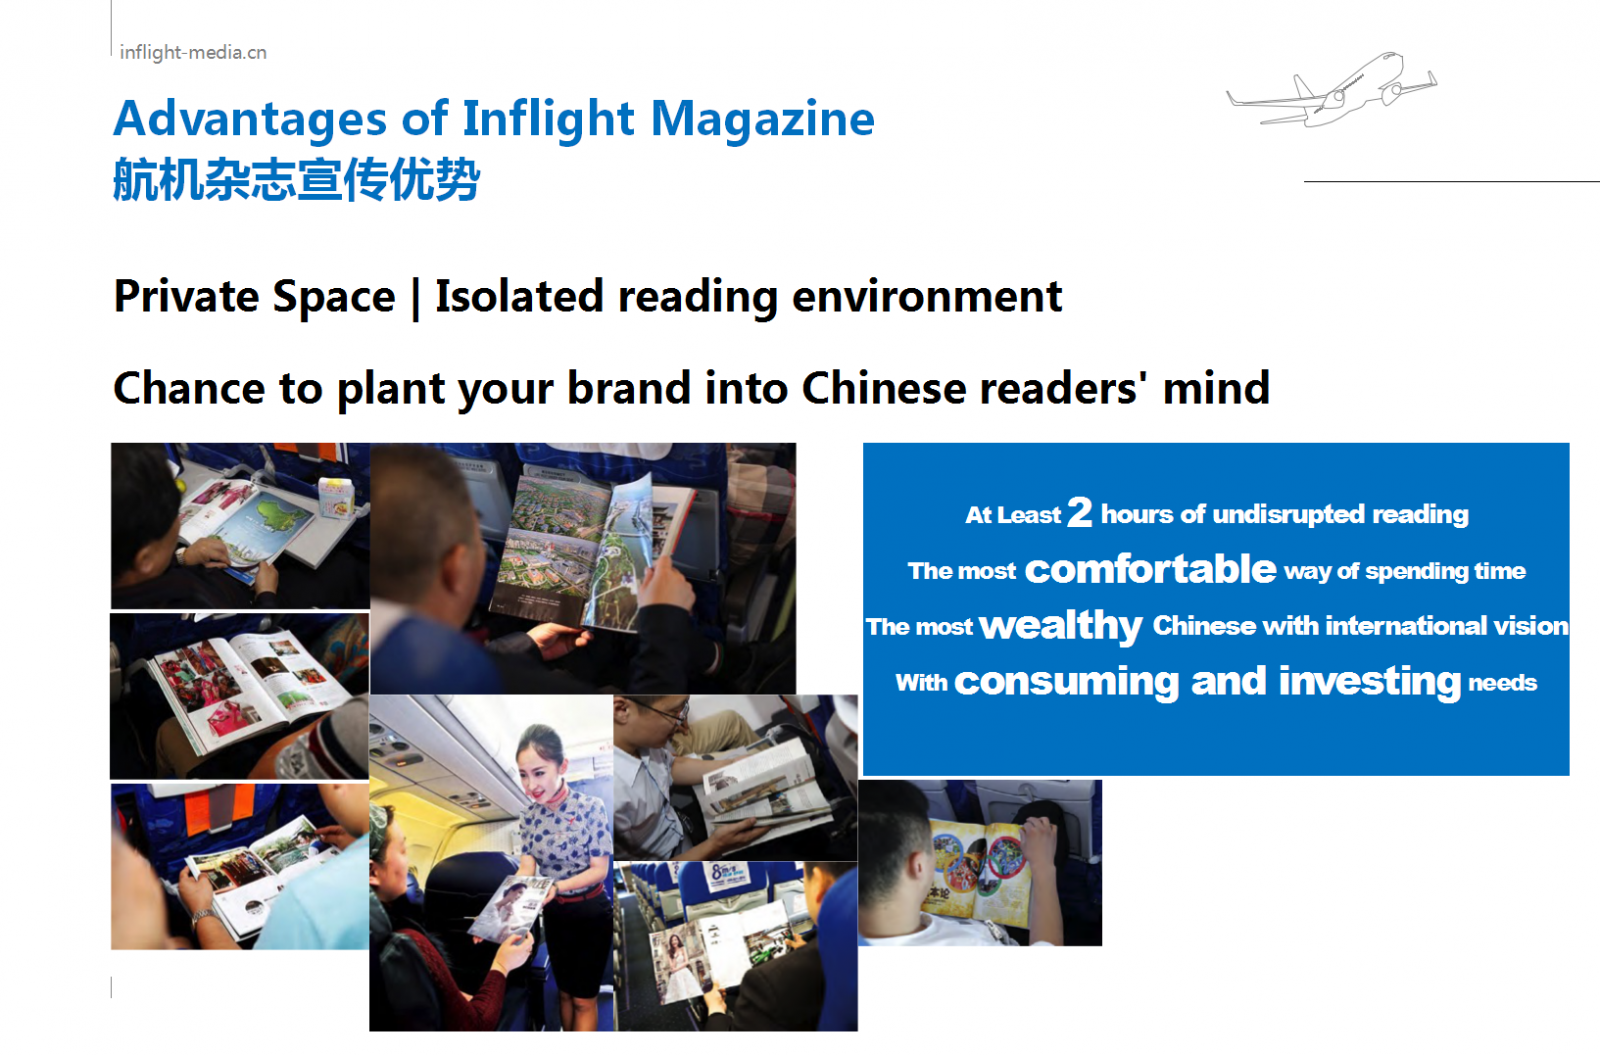 Hainan Airlines magazine